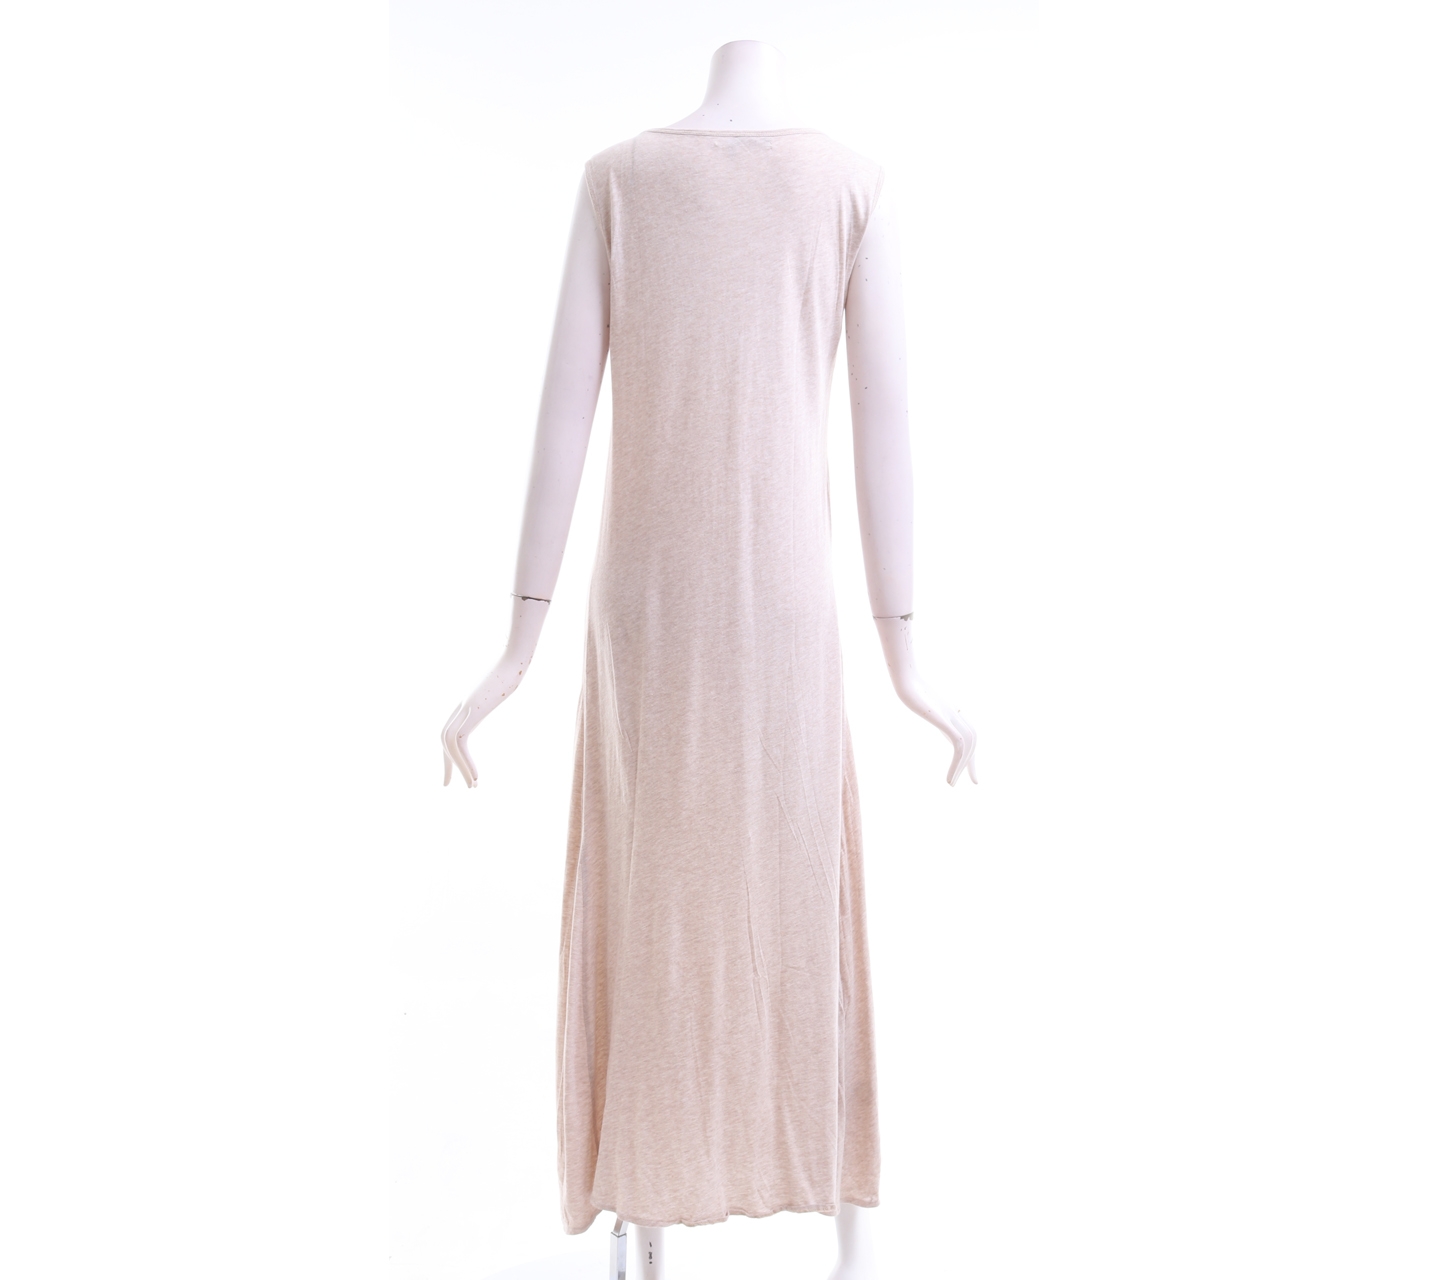 Bycatch Light Brown Long Dress